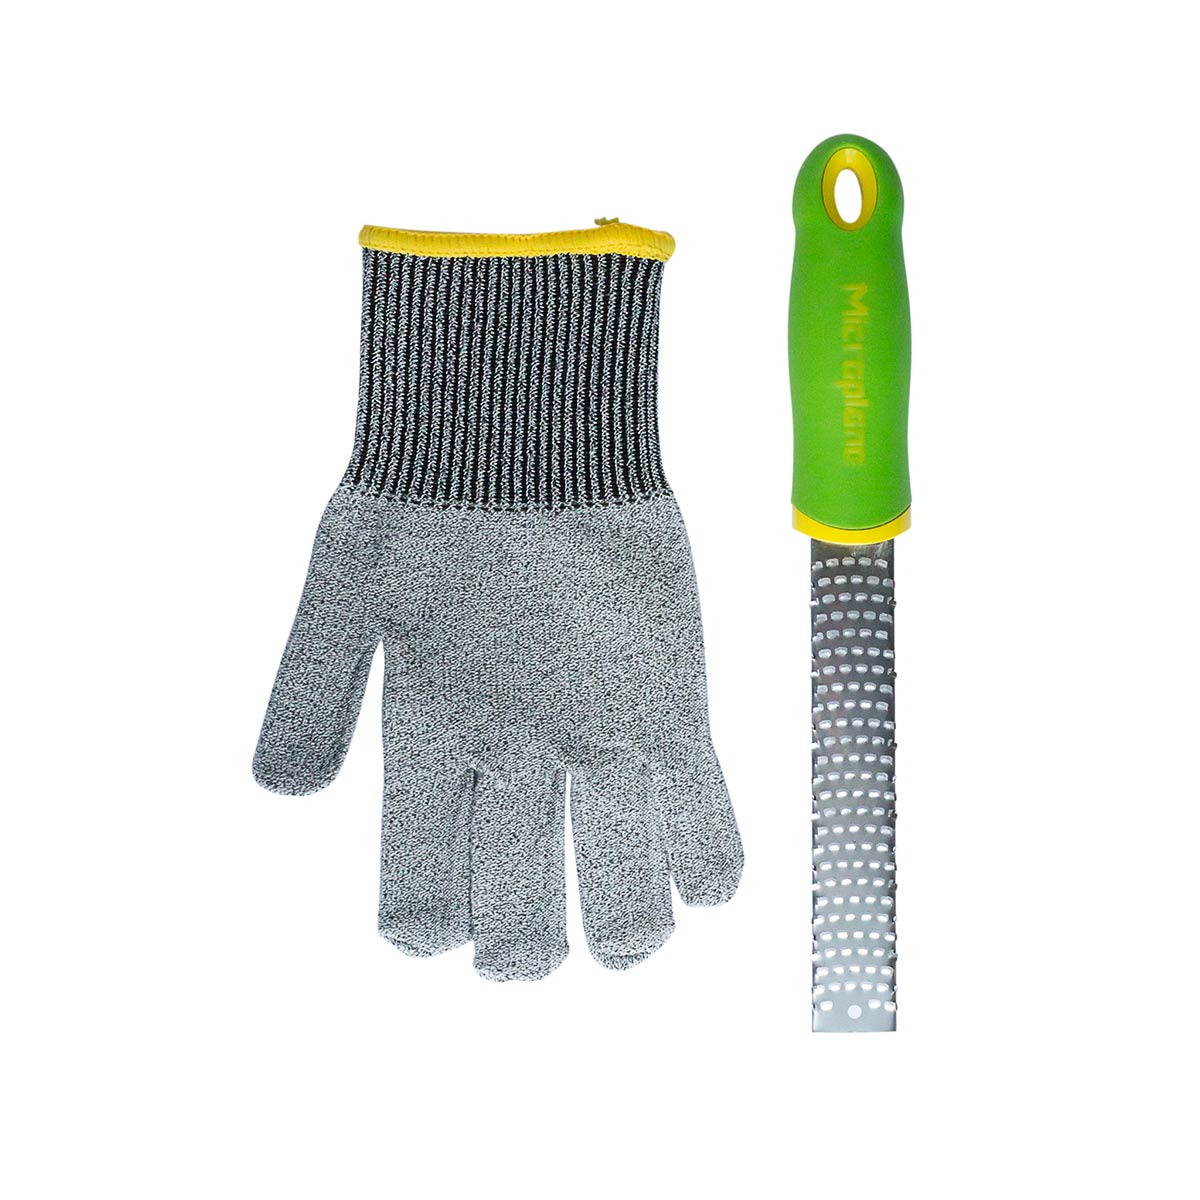 Zesteur / Râpe + gant pour Enfant    - Microplane - Râpe et zesteur - 